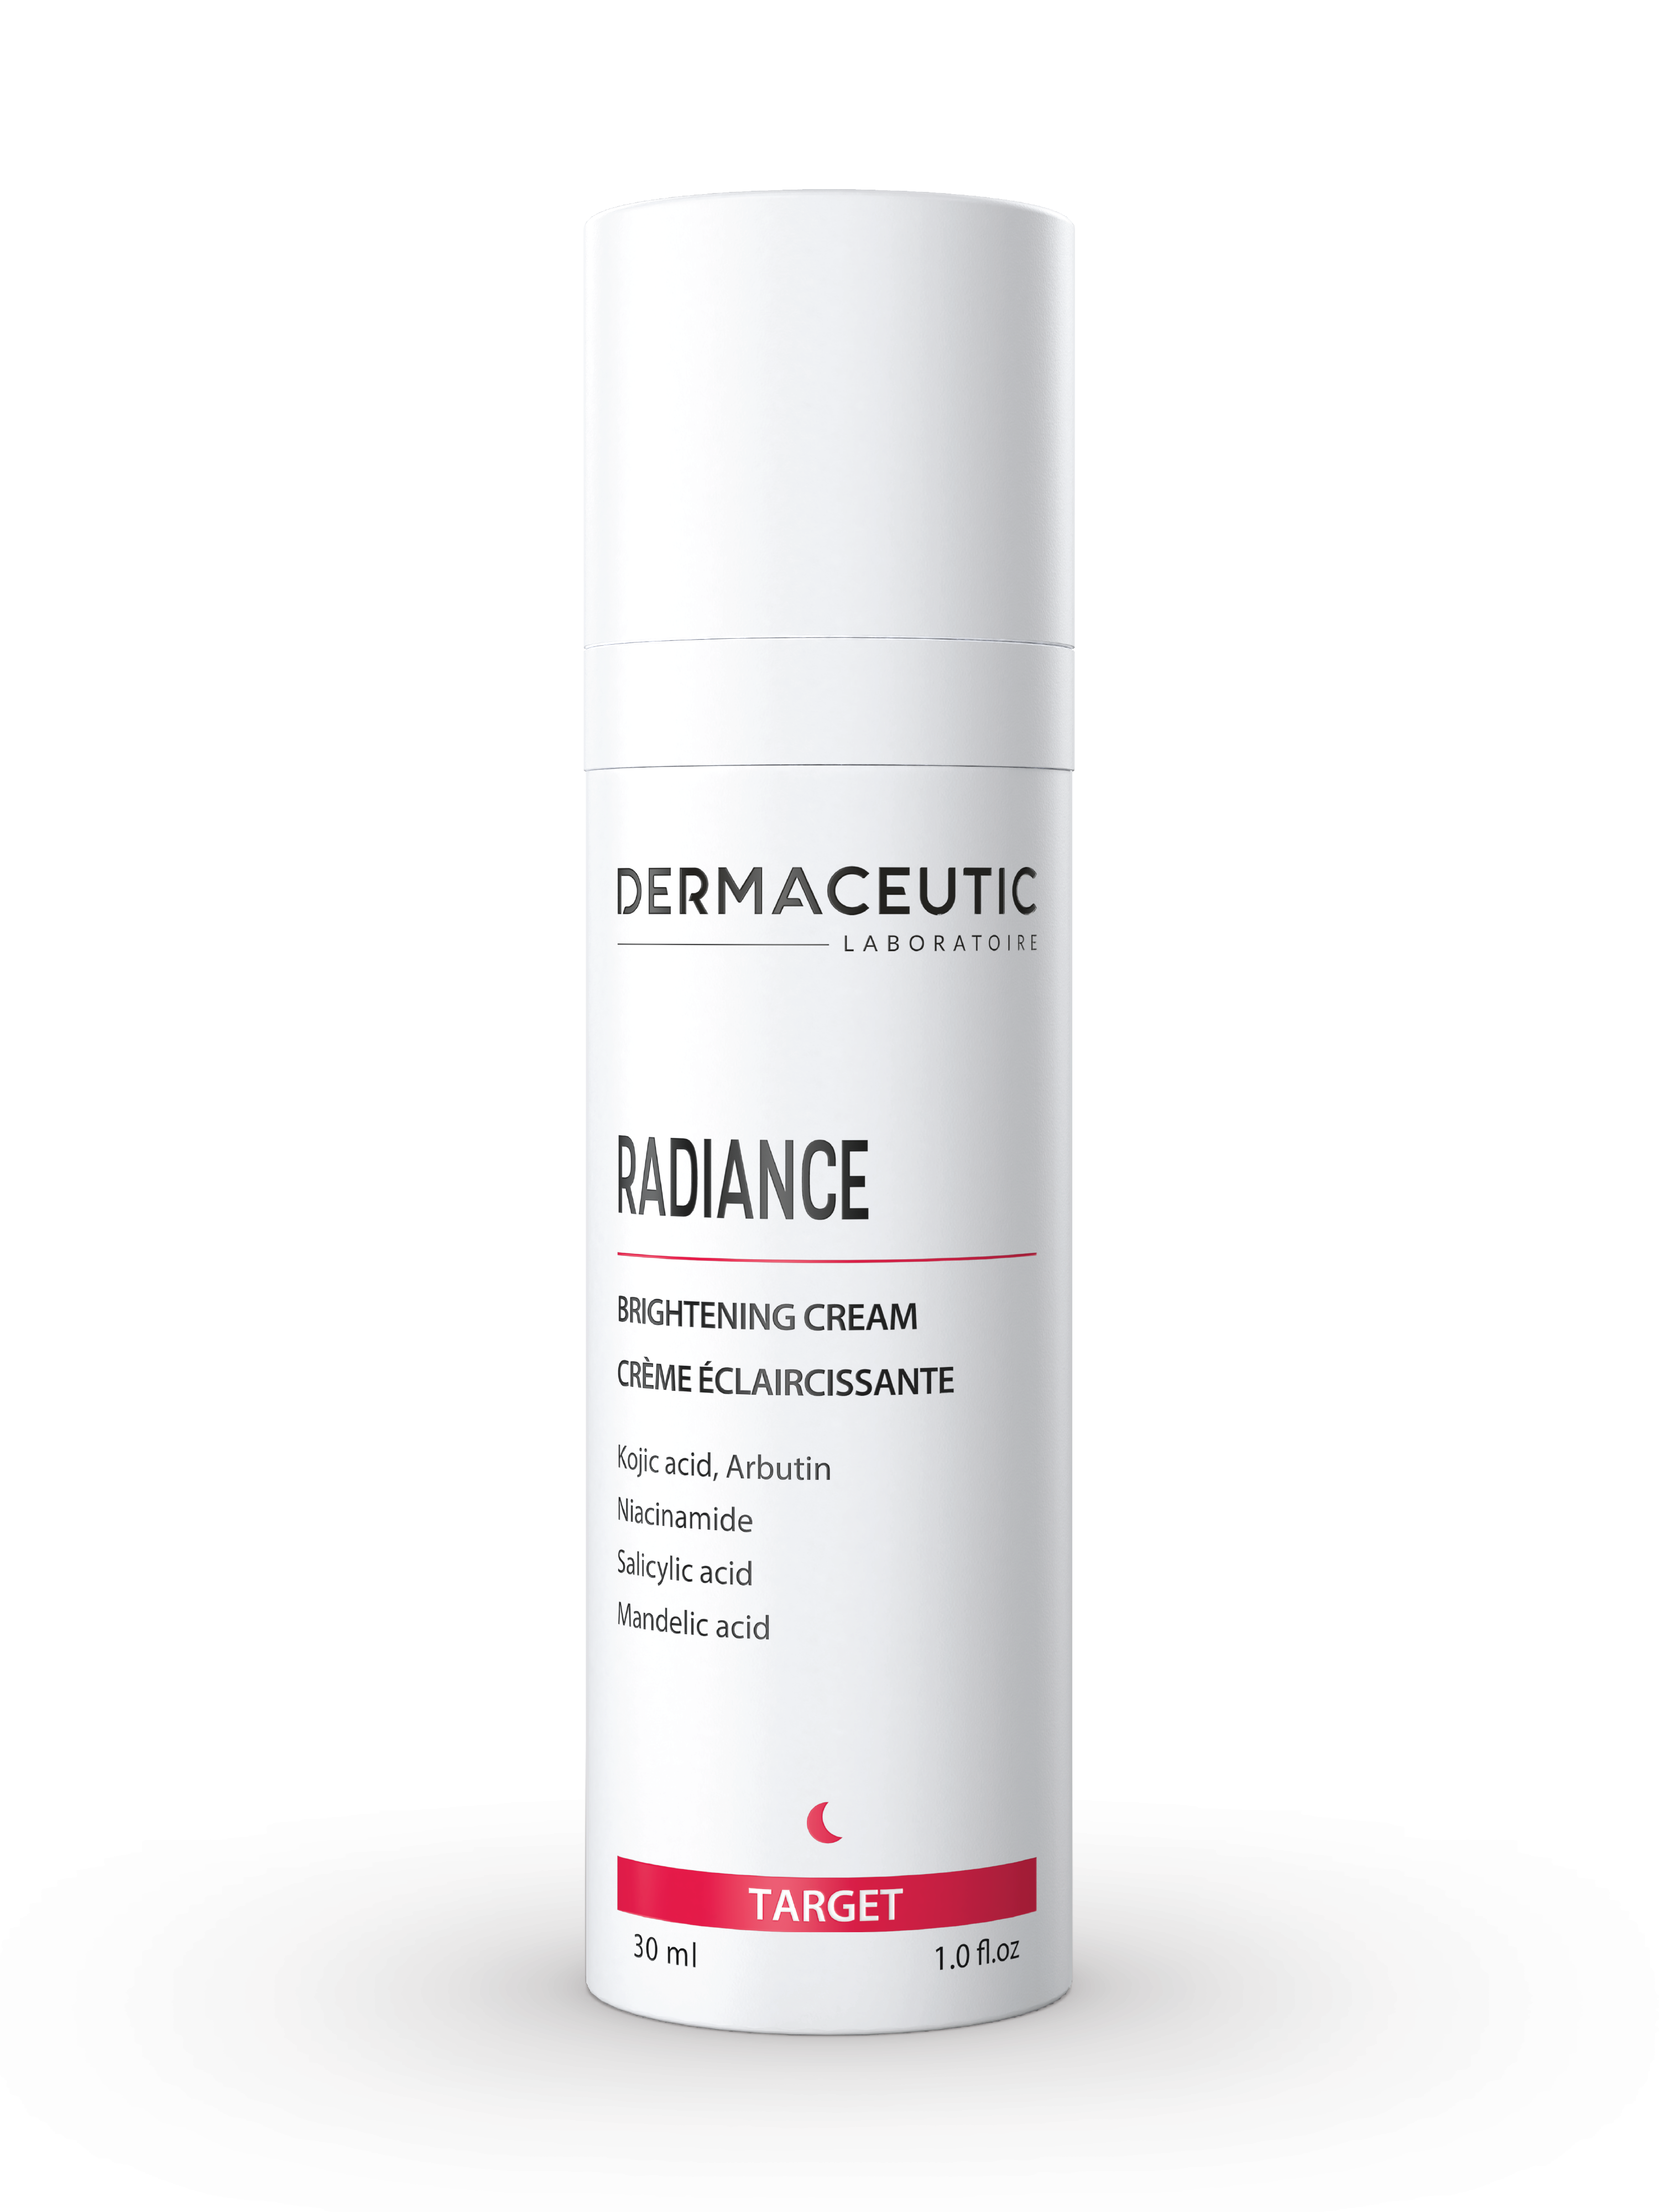 Dermaceutic Radiance Brightening Cream, 30 ml